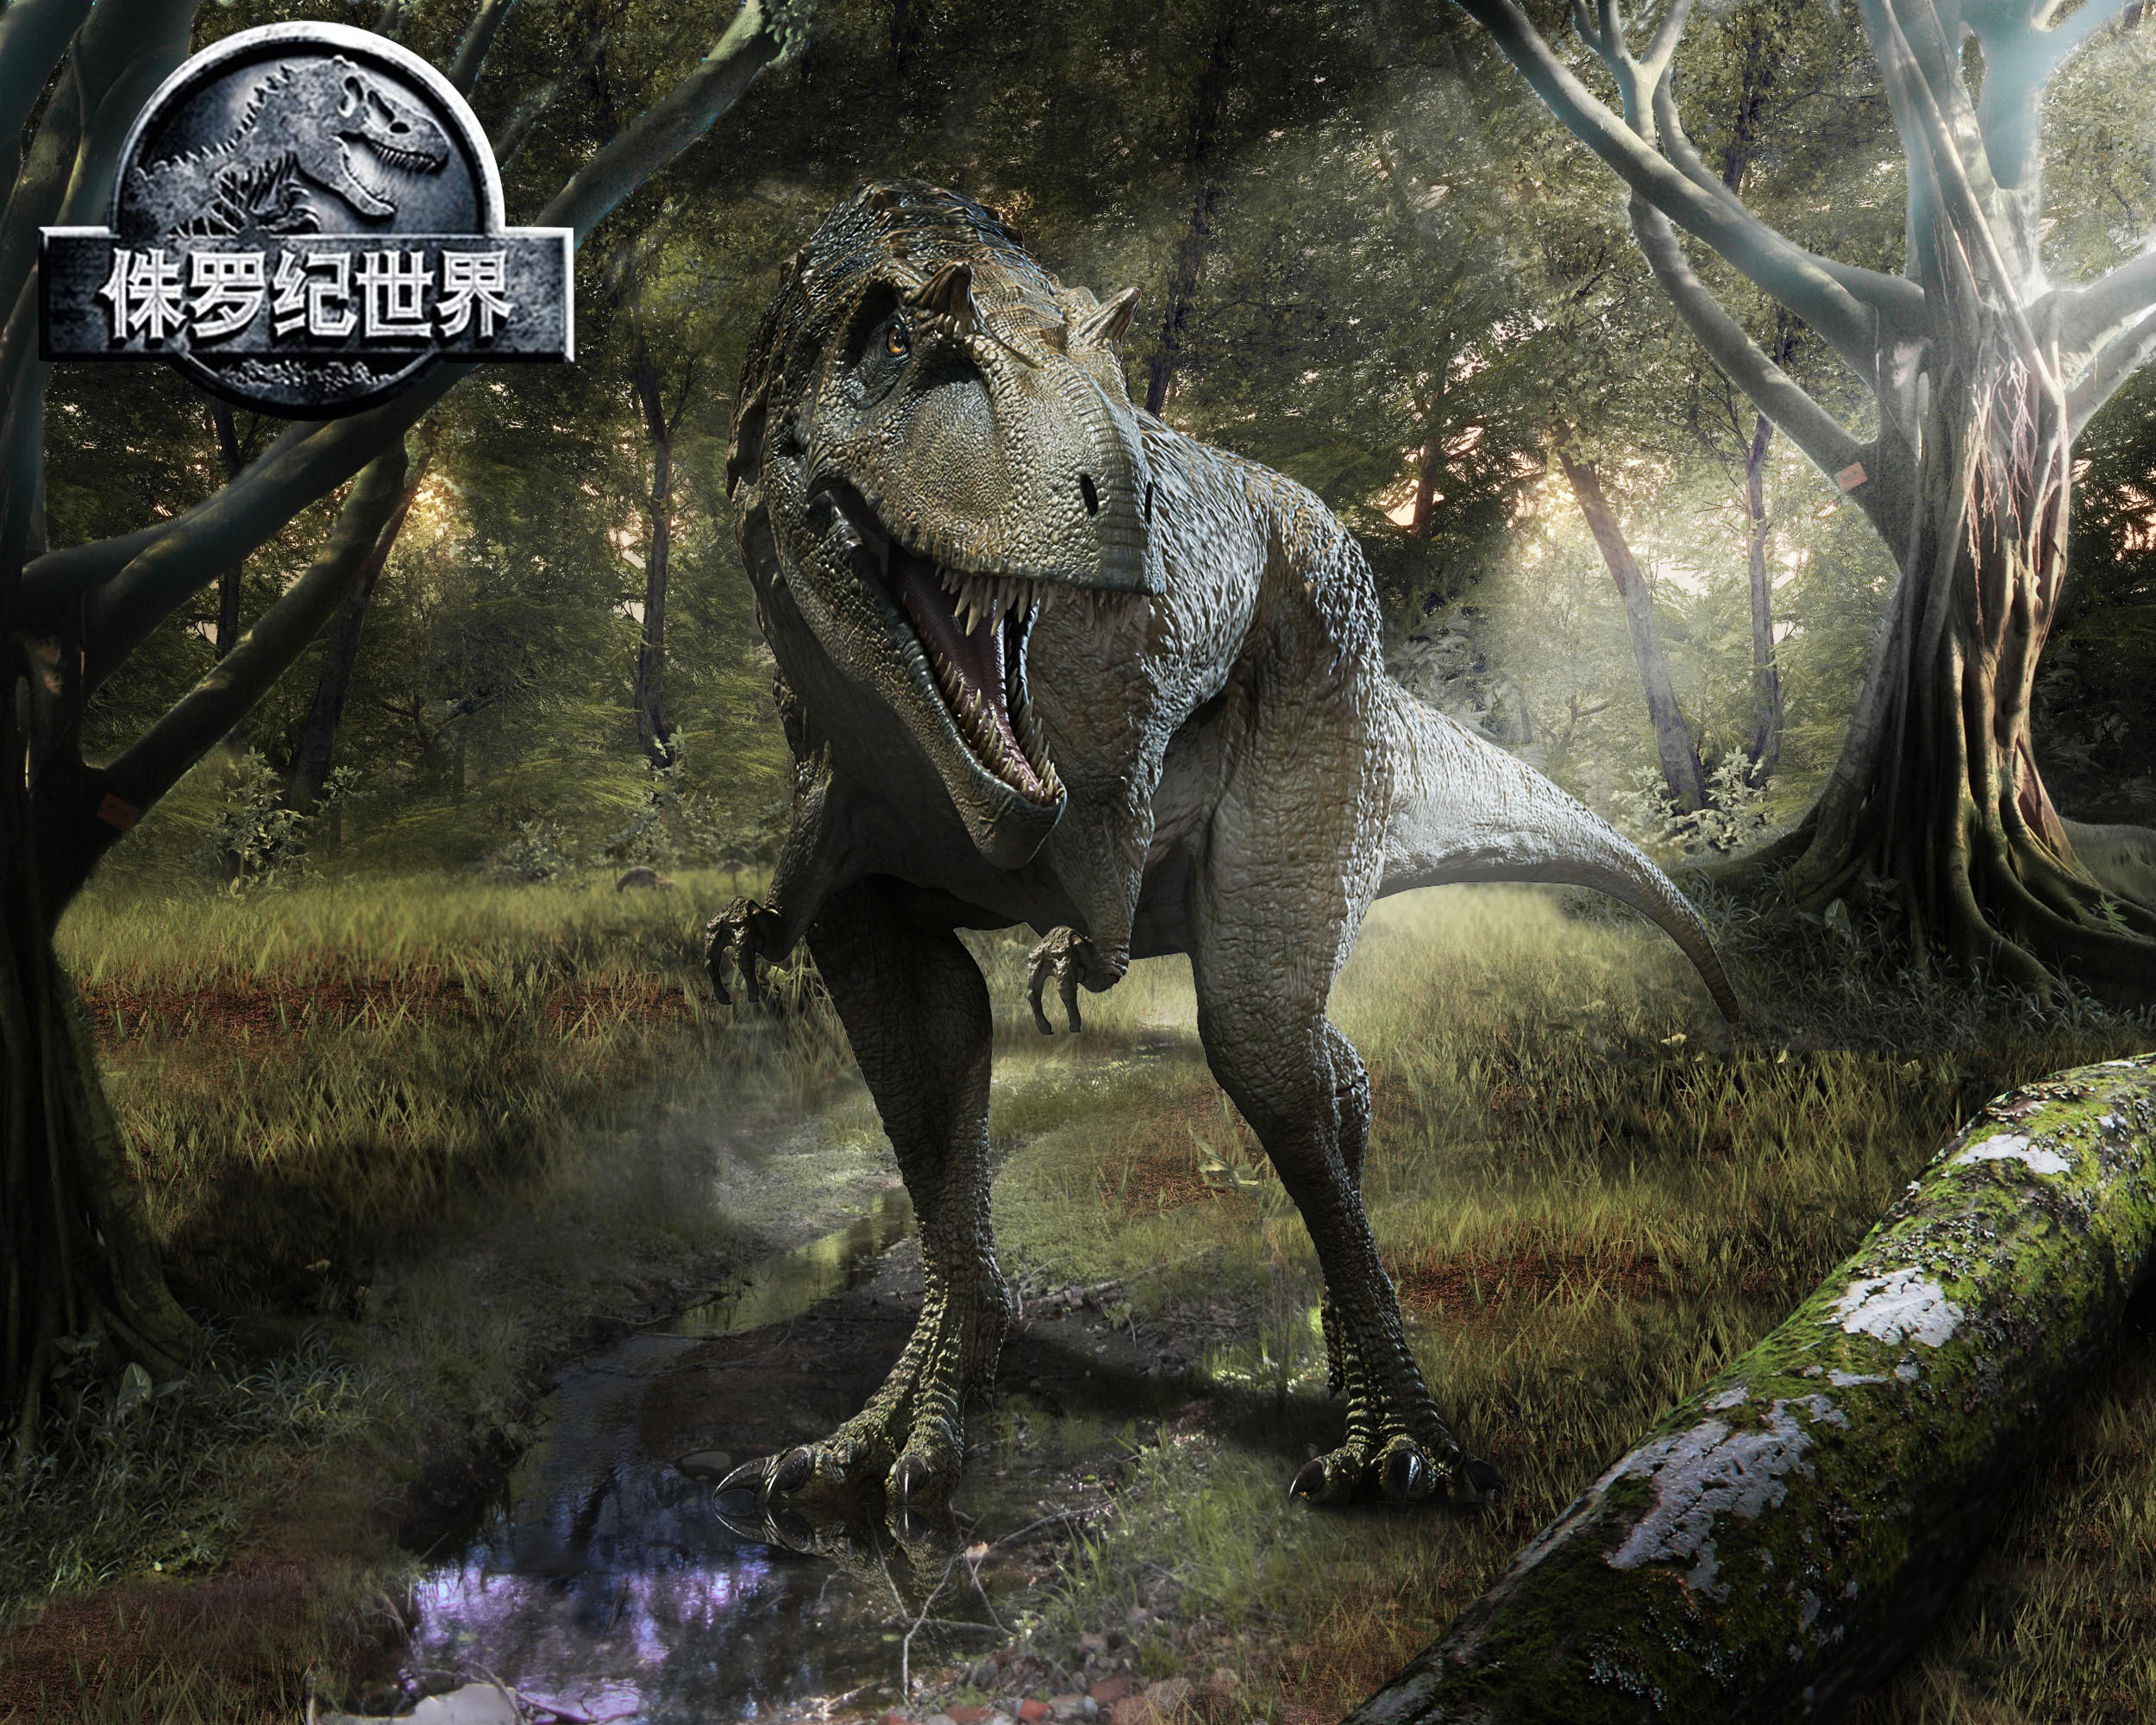 《侏罗纪世界2》发布终极版预告片,迅猛龙基因被争夺,恐龙大举入侵人类世界